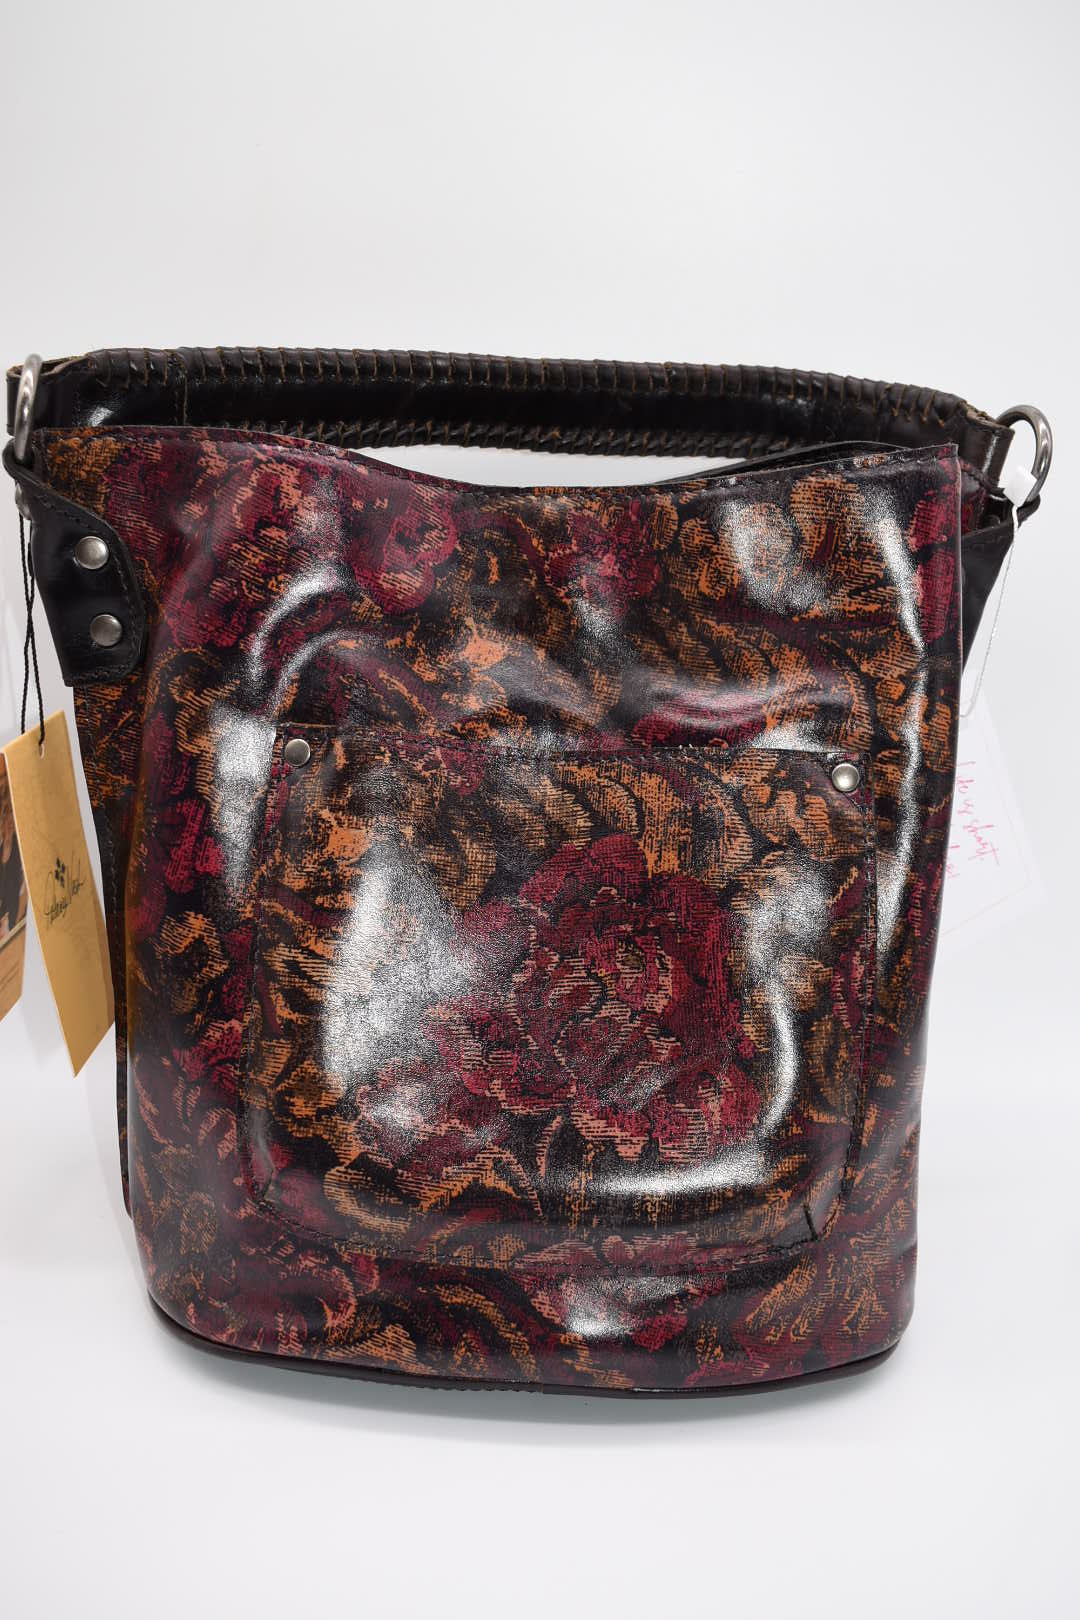 Patricia Nash Otavia Bucket Crossbody Bag in Vintage Floral Brocade